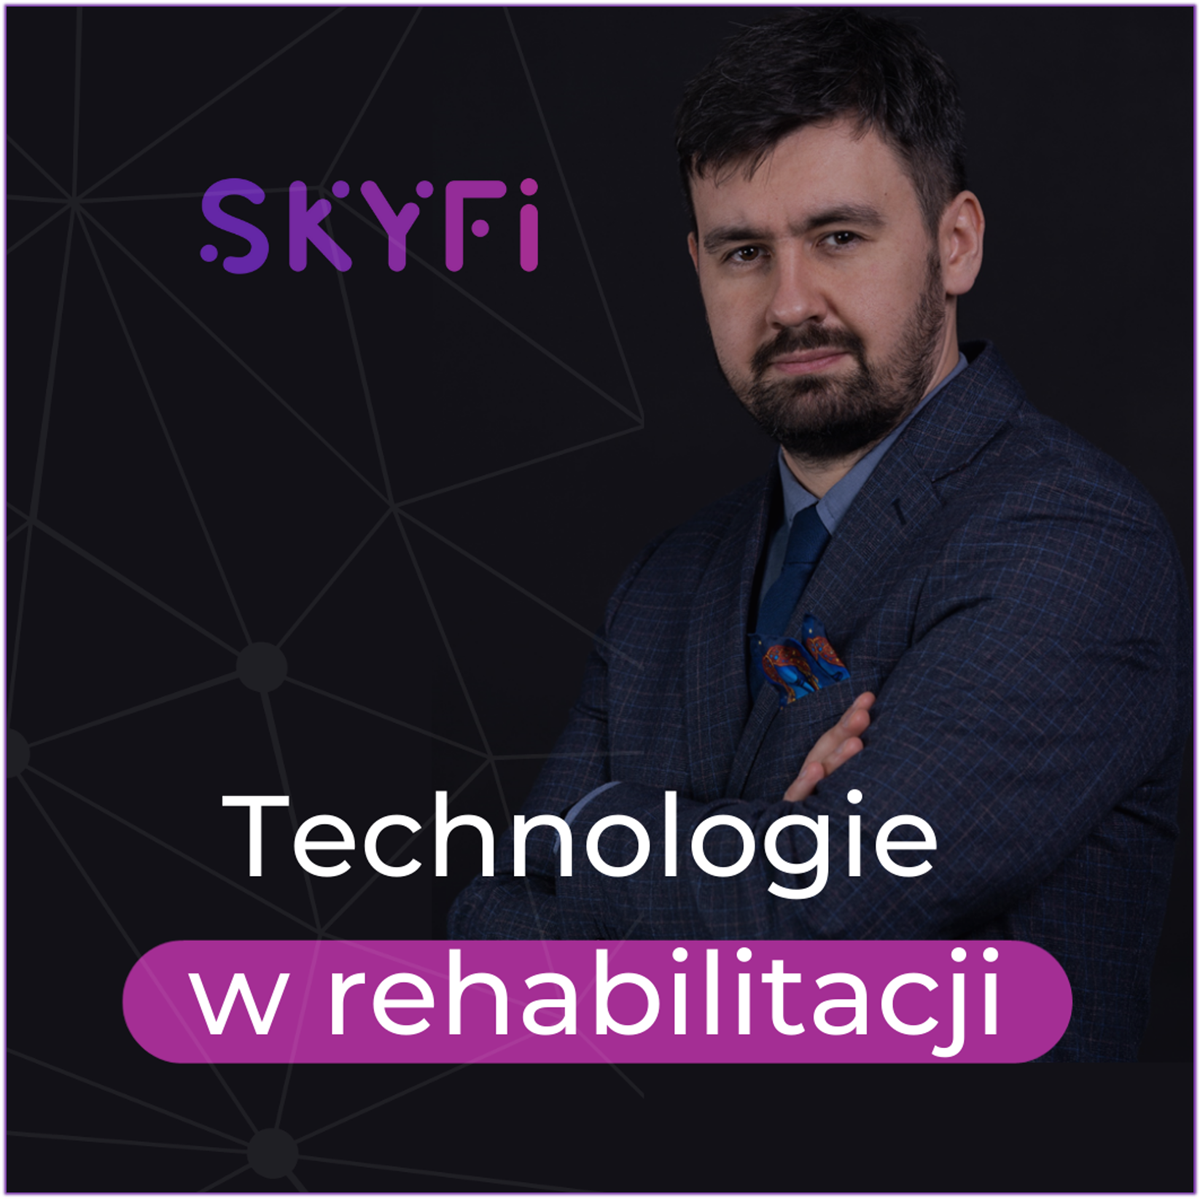 Skyfi-podcast-011-nowy-sprzet-lub-metoda-w-placówce-rehabilitacyjnej